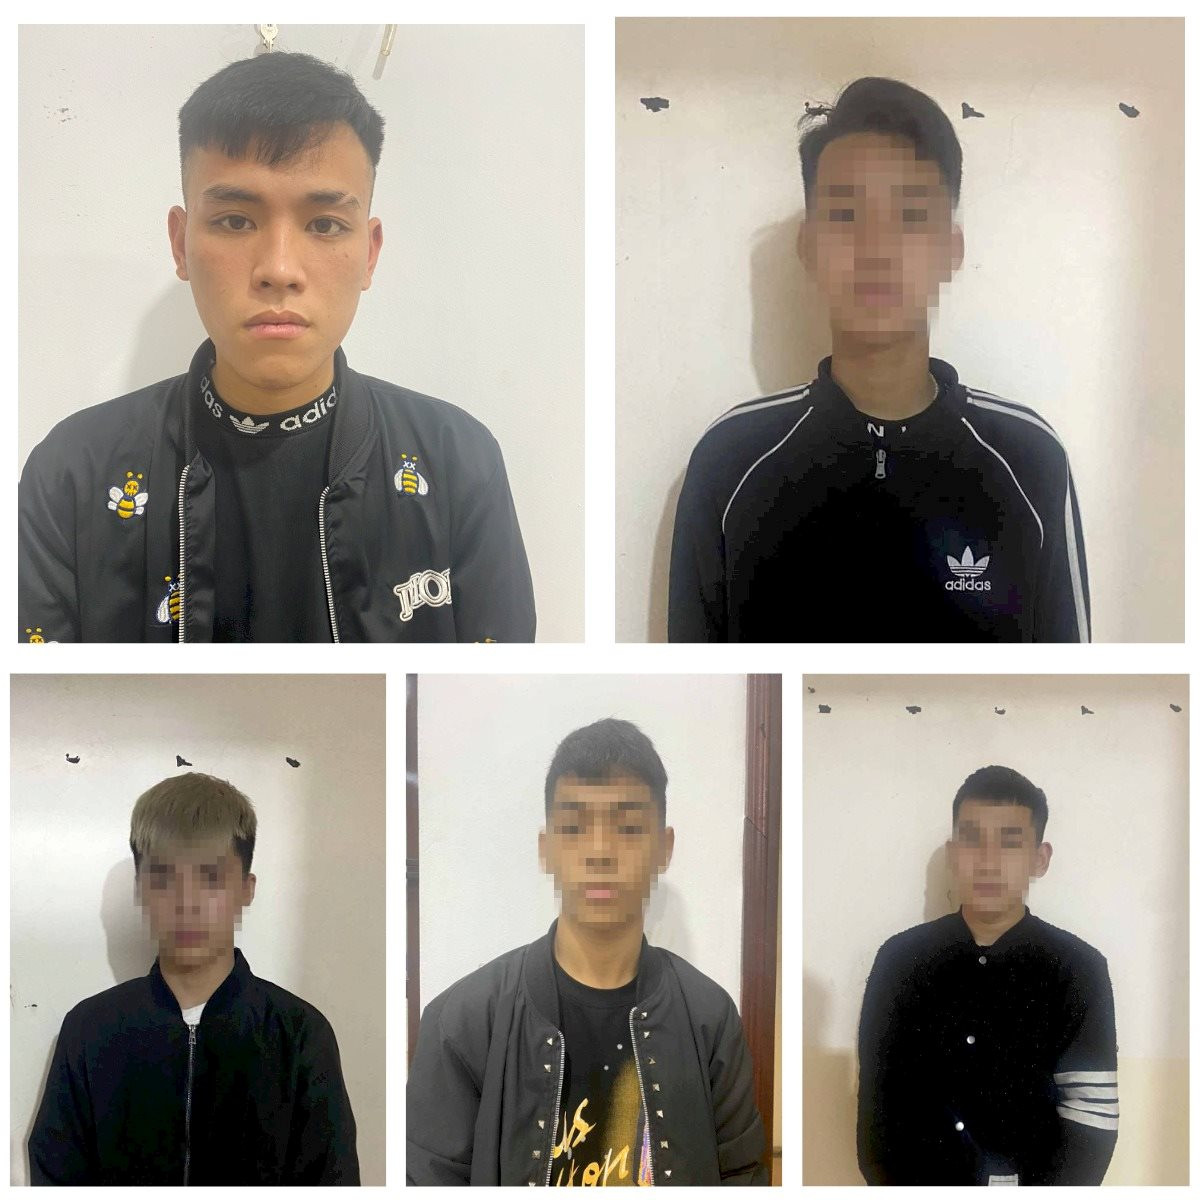 Ném vỏ chai vào người đi đường khiến 6 thanh, thiếu niên ở Bắc Giang bị tạm giữ - Ảnh 1.